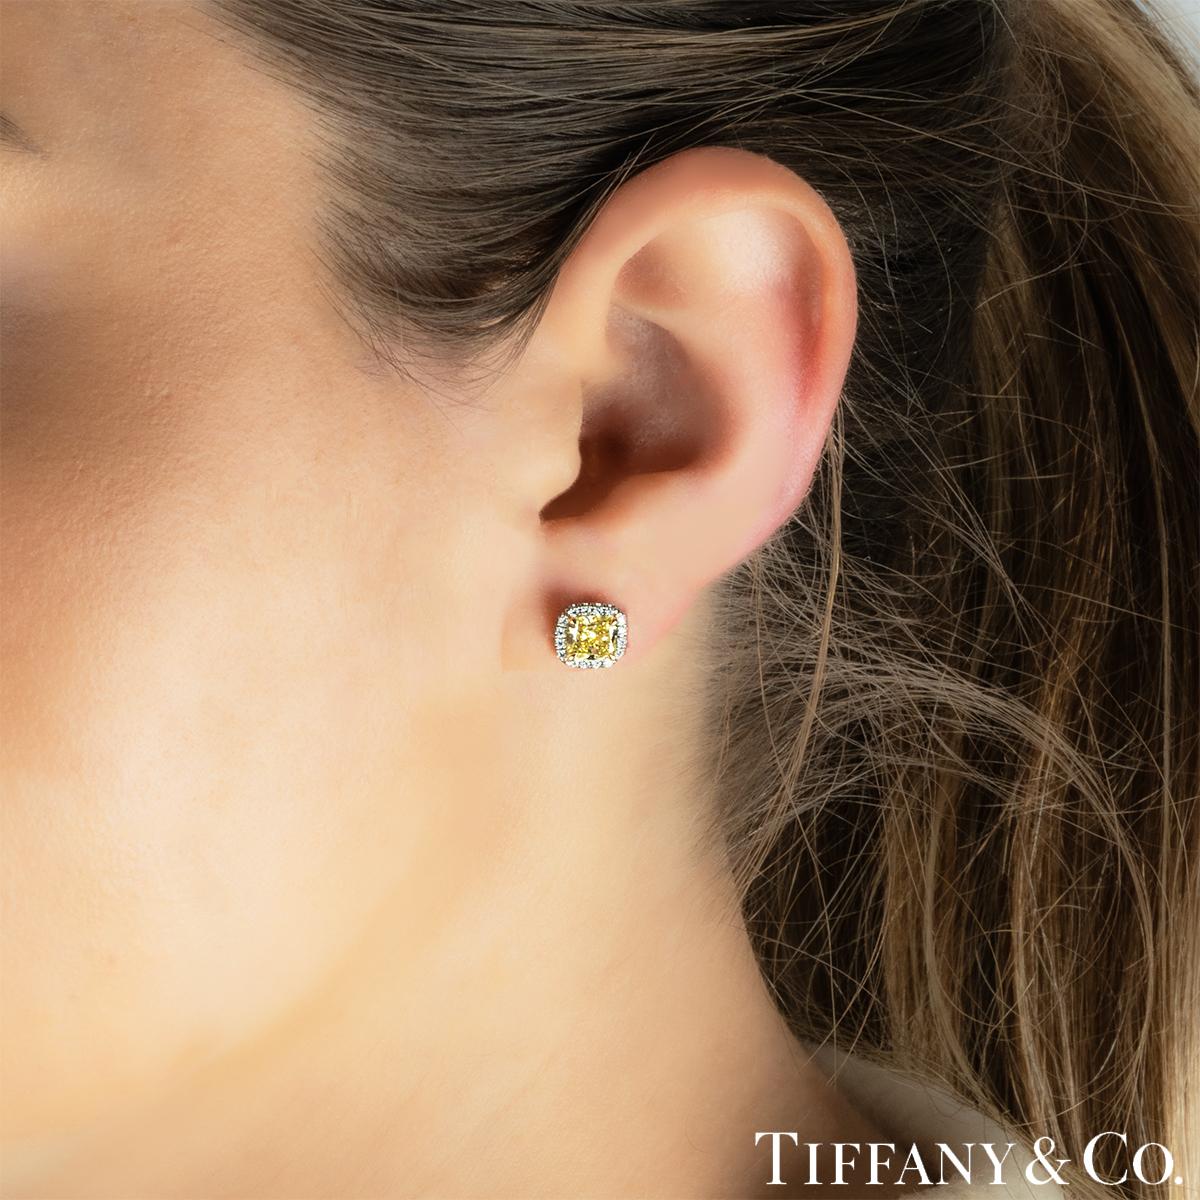 Tiffany & Co. Soleste Fancy Intense Yellow Cushion Cut Diamond Earrings 1.50ct T 1